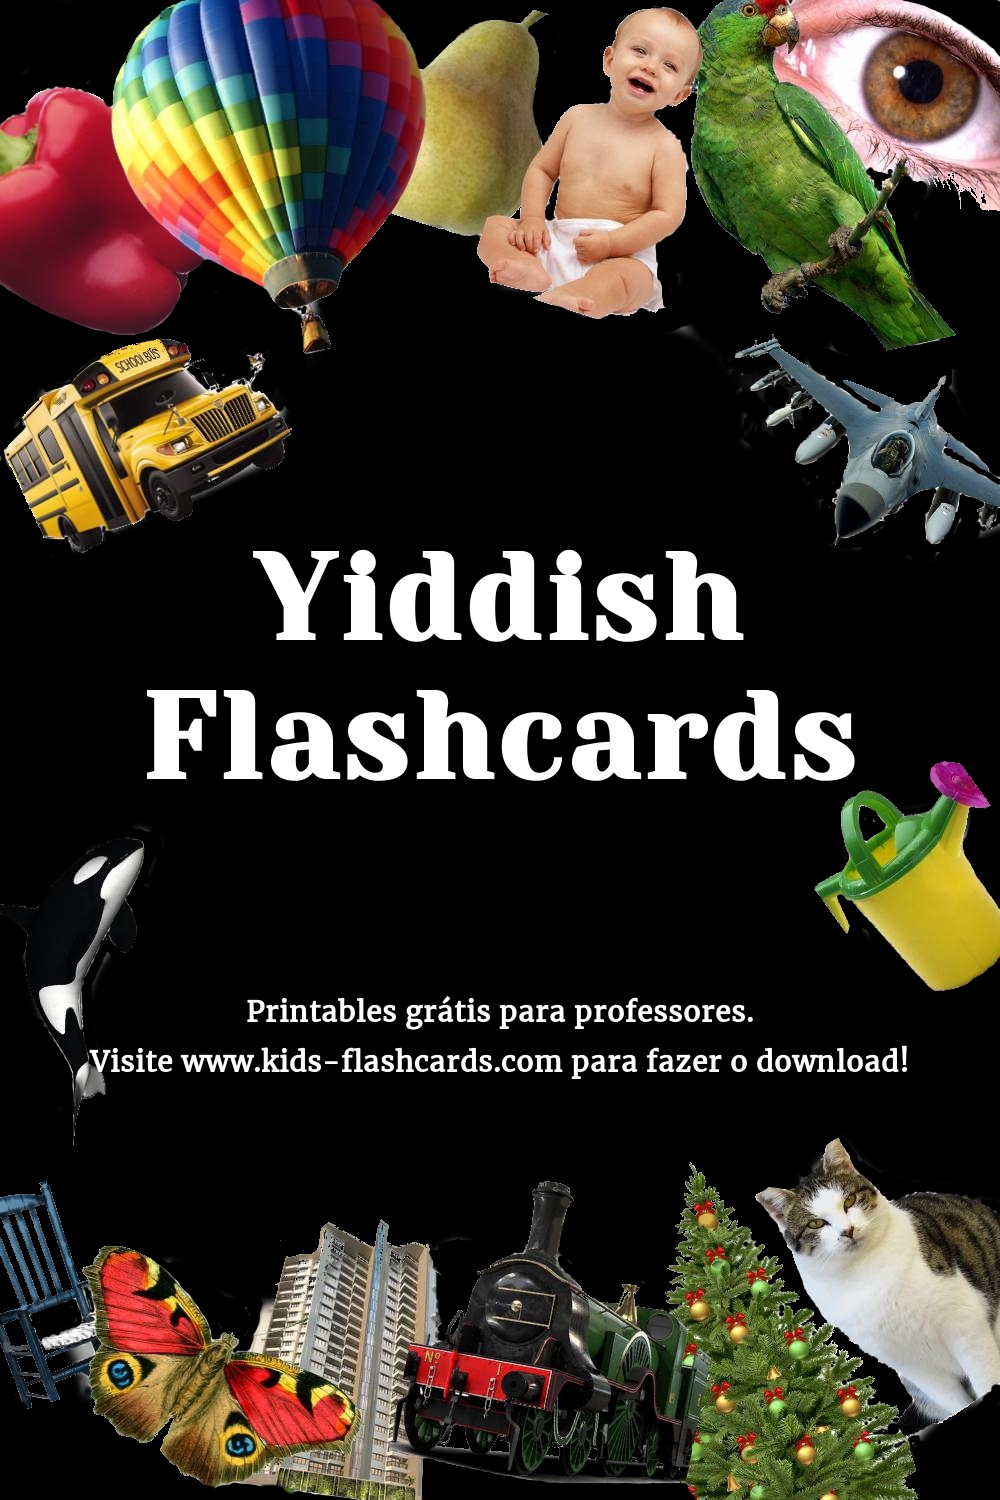 Printables em Yiddish grátis